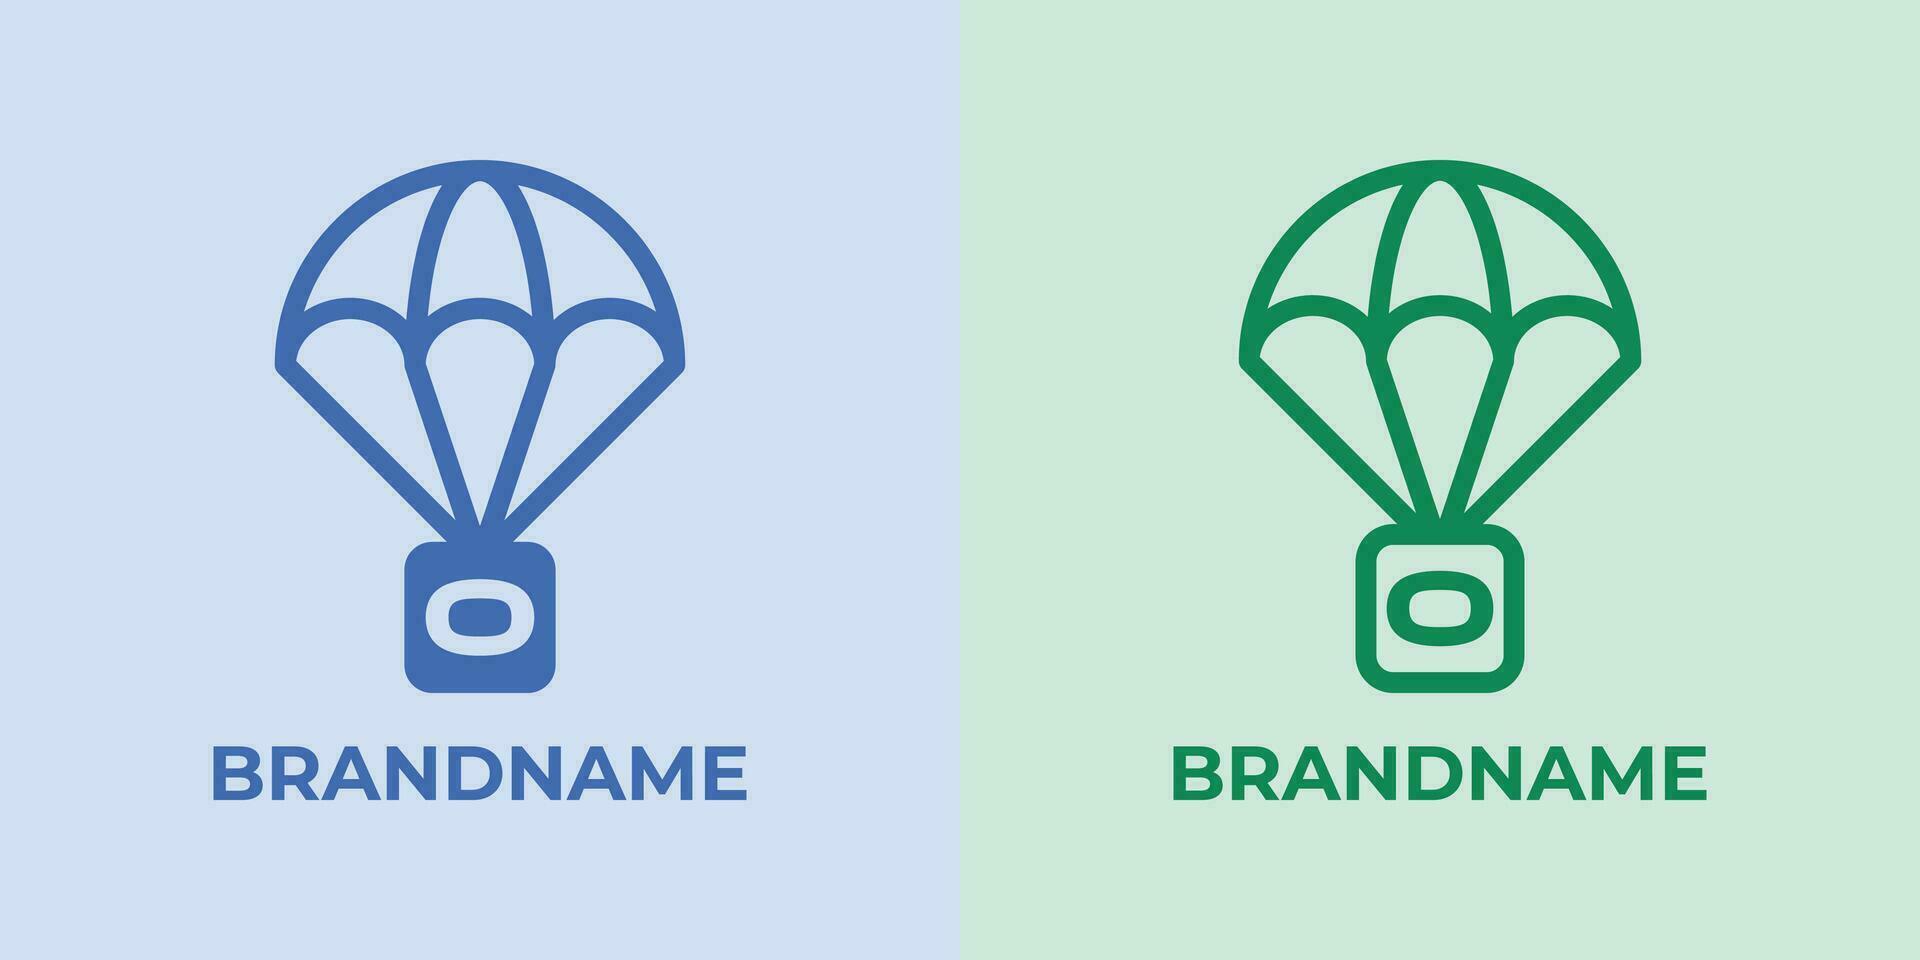 första o fallskärmsnedsläpp logotyp uppsättning, bra för företag relaterad till fallskärmsnedsläpp eller fallskärmar med o första vektor